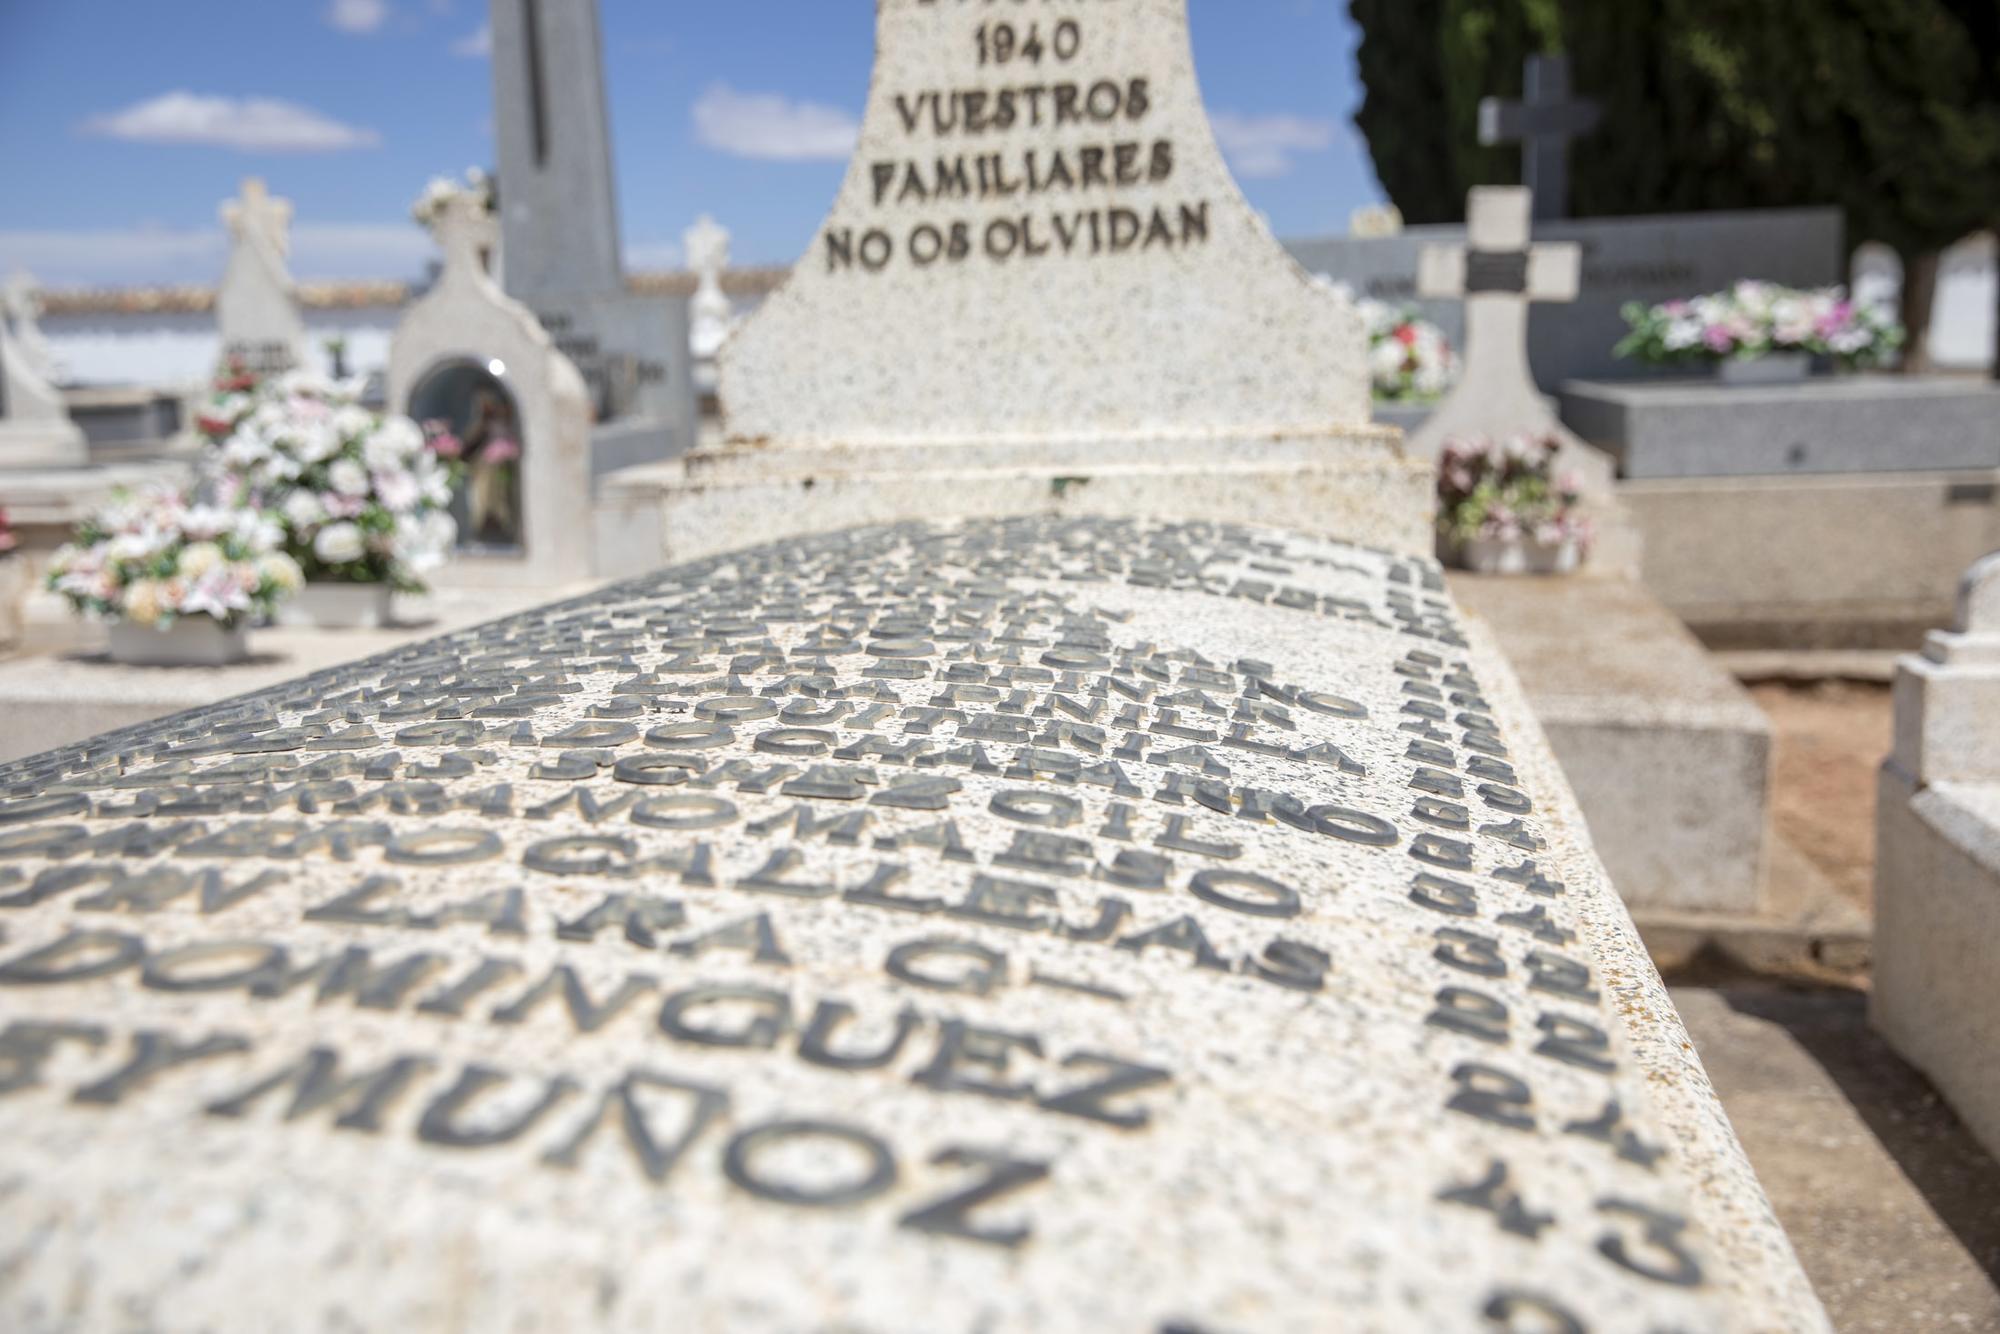 Exhumación de Manzanares en Ciudad Real - 18